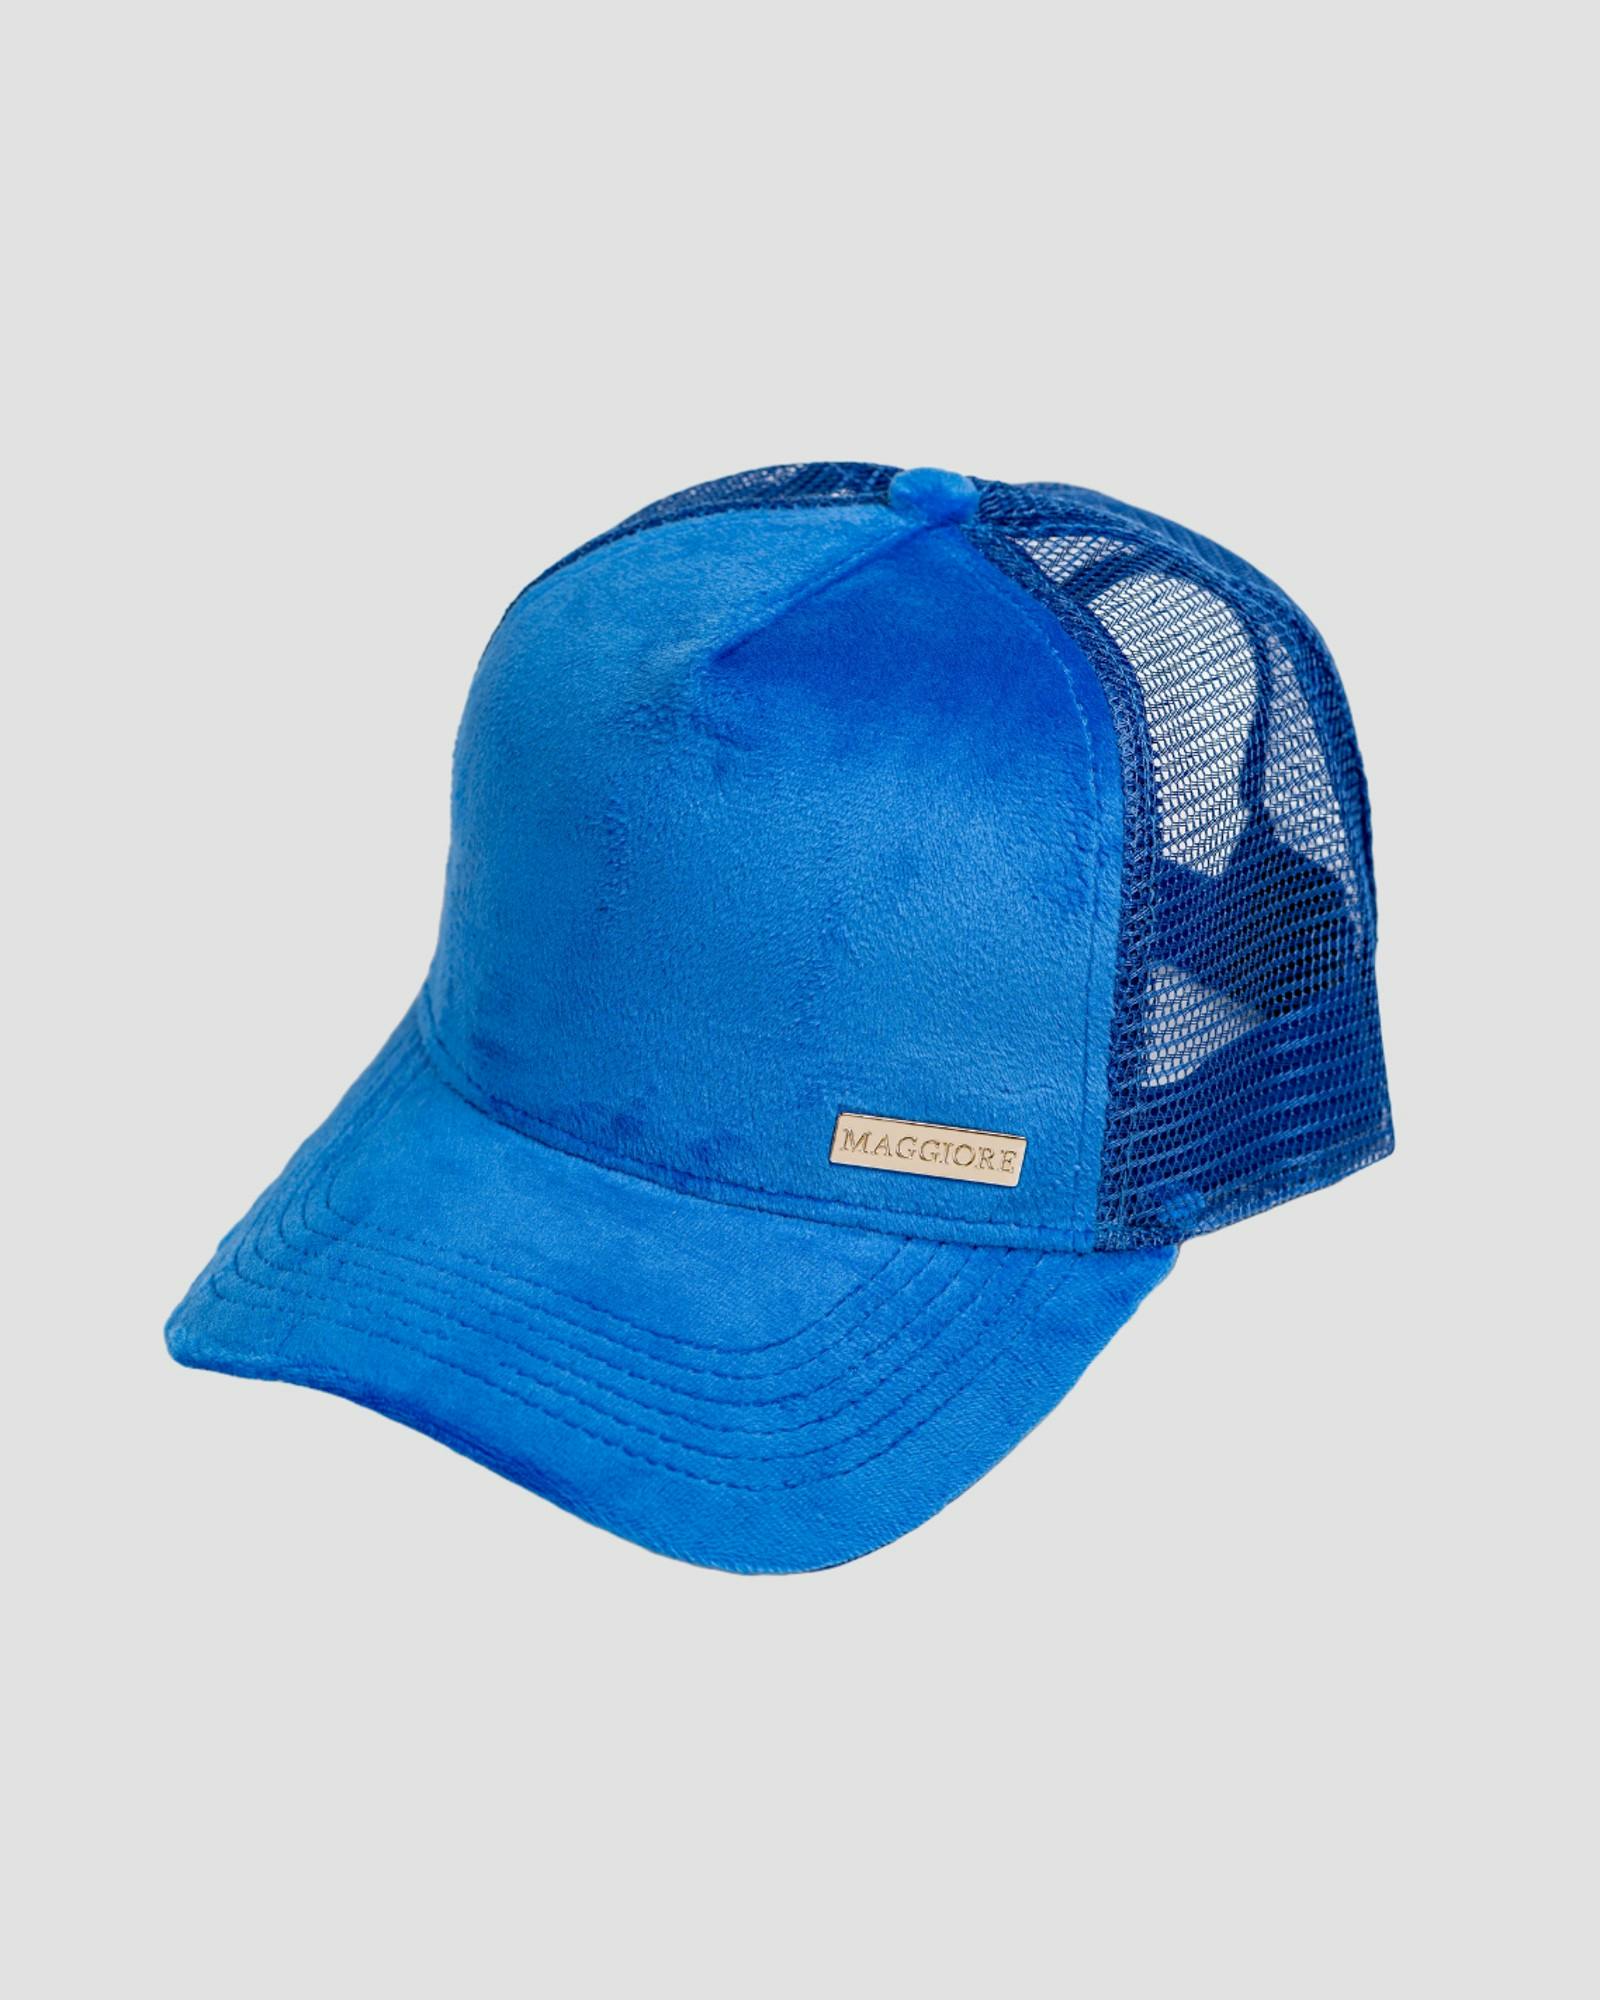 MAGGIORE Unlimited Blue Cap